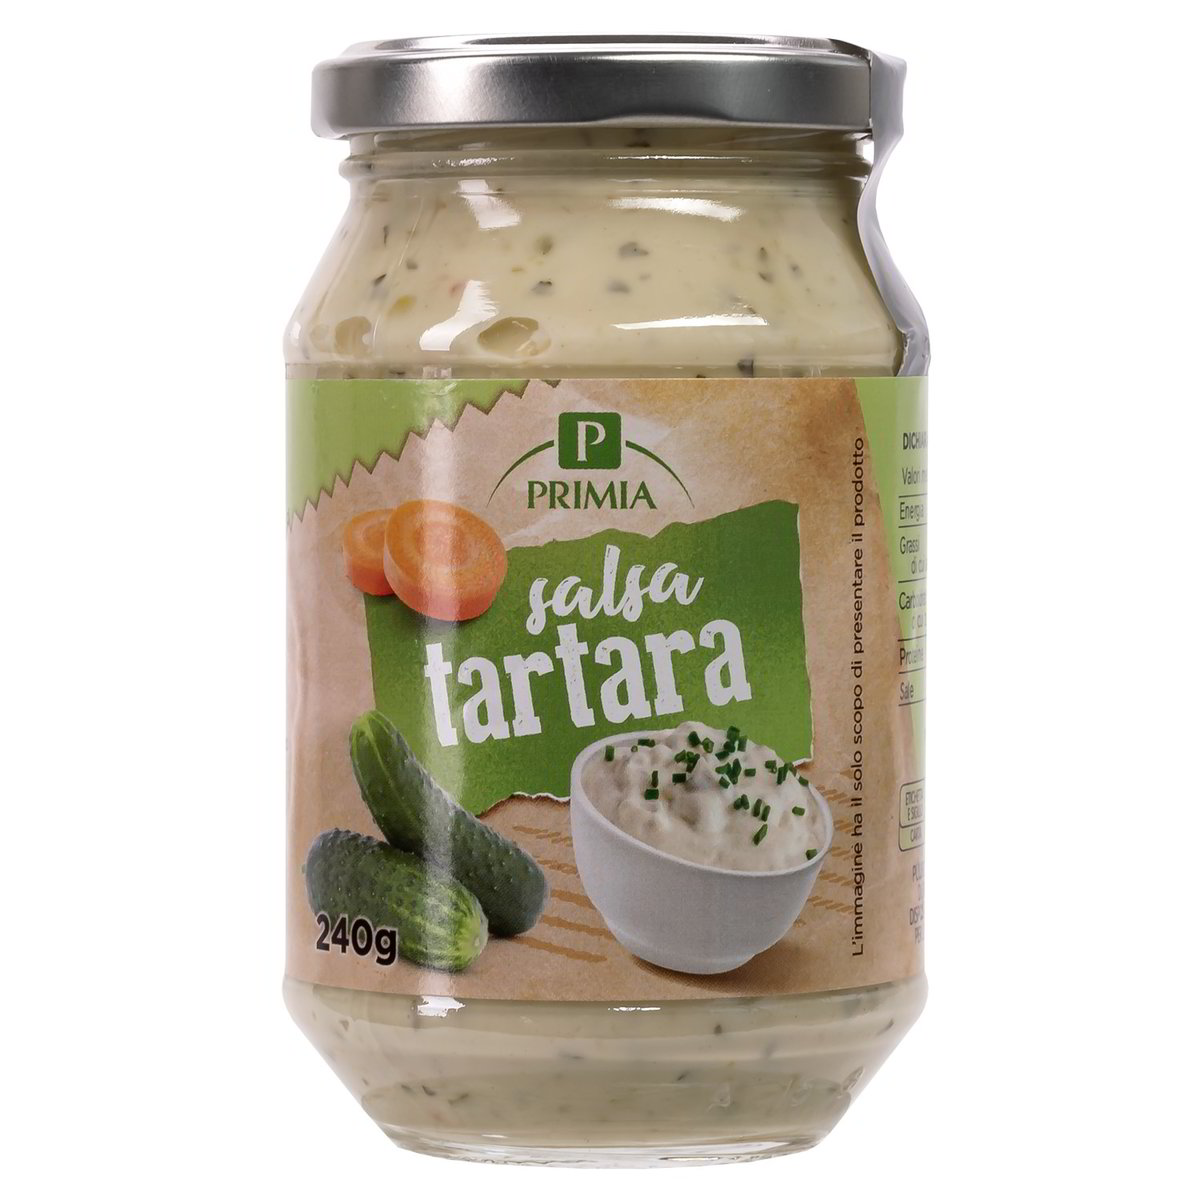 Salsa Tartara